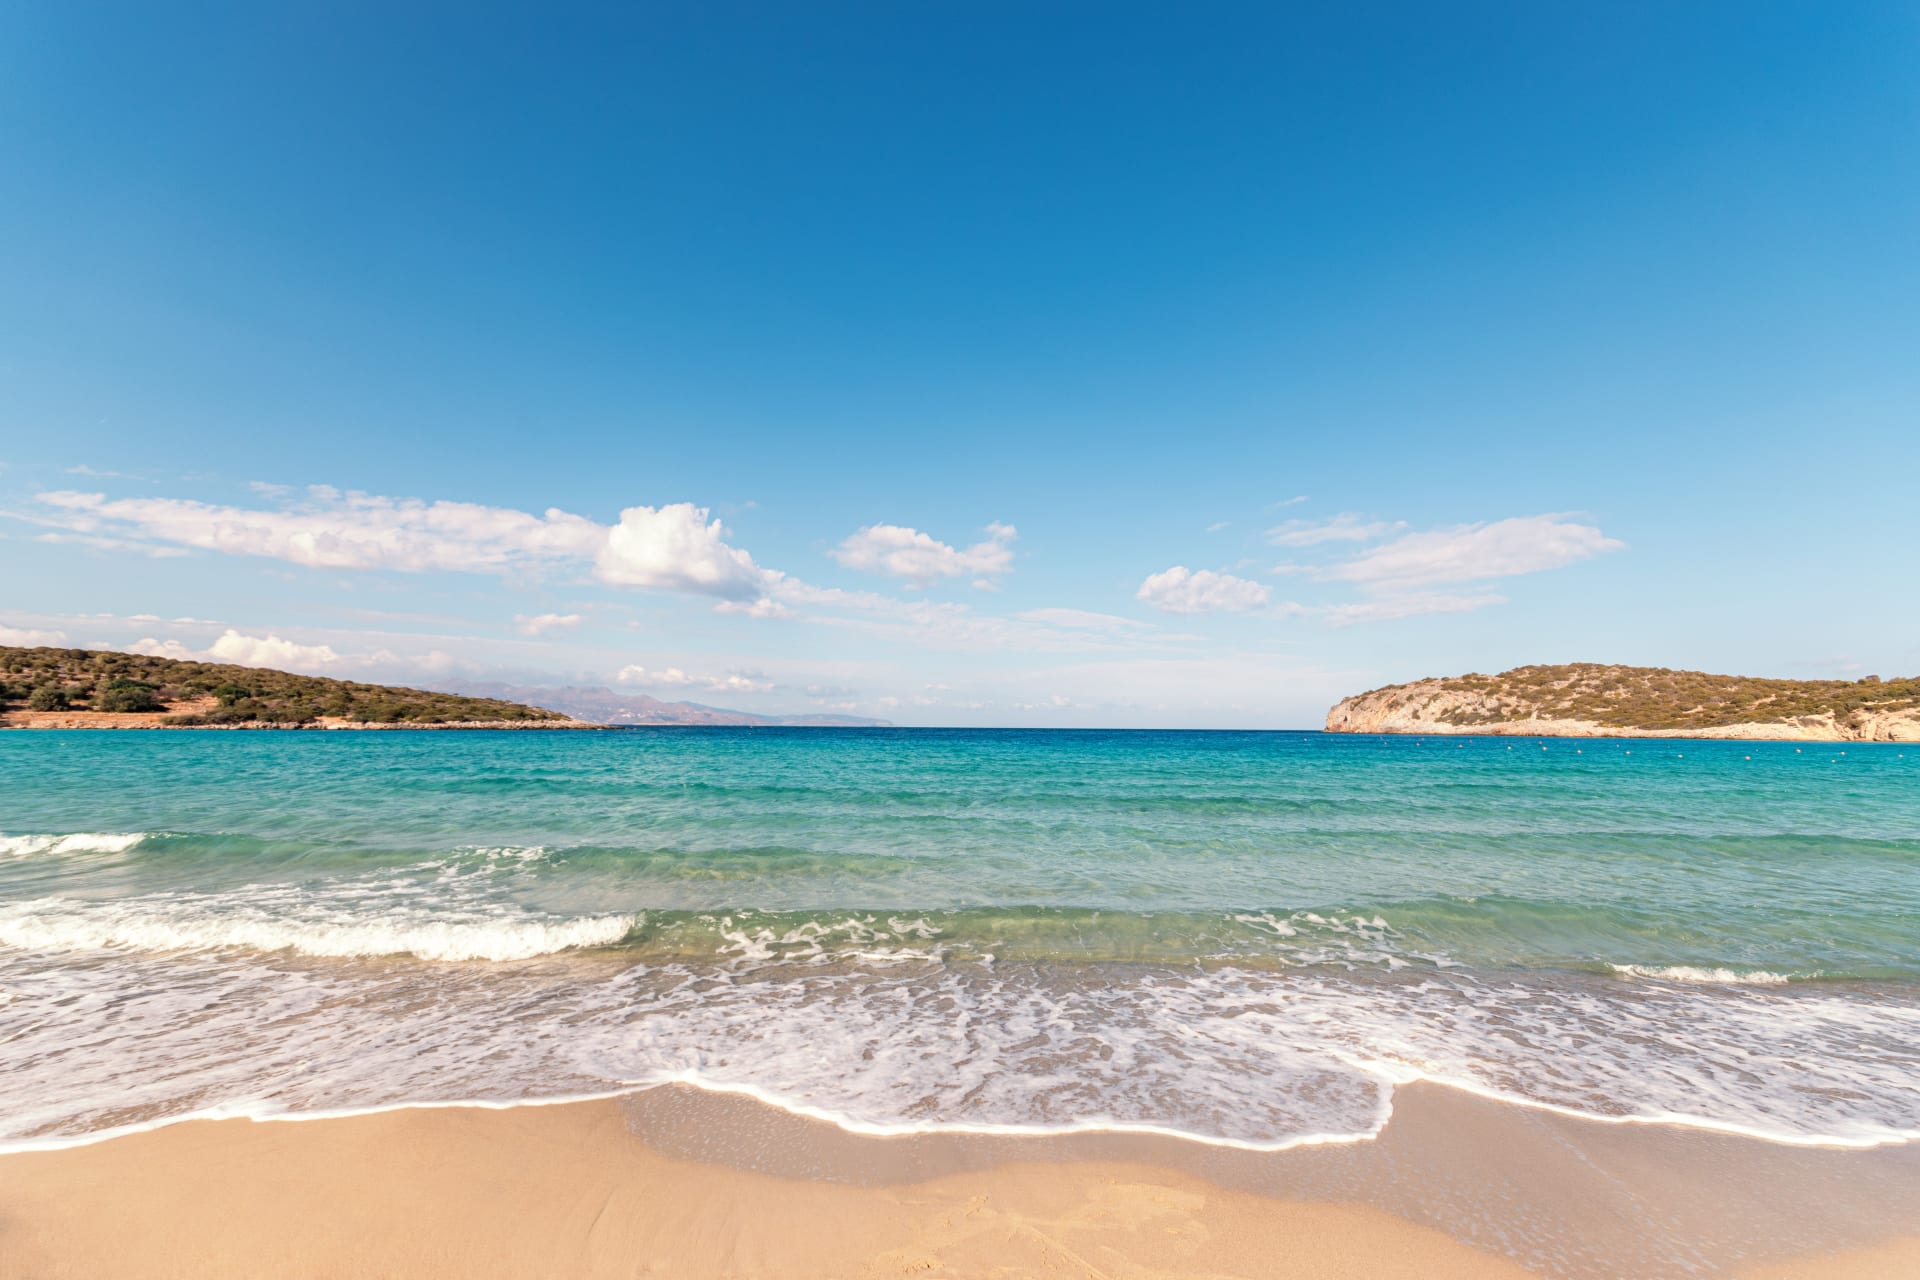 Na šesté pozici se umístila pláž Voulisma v Řecku.